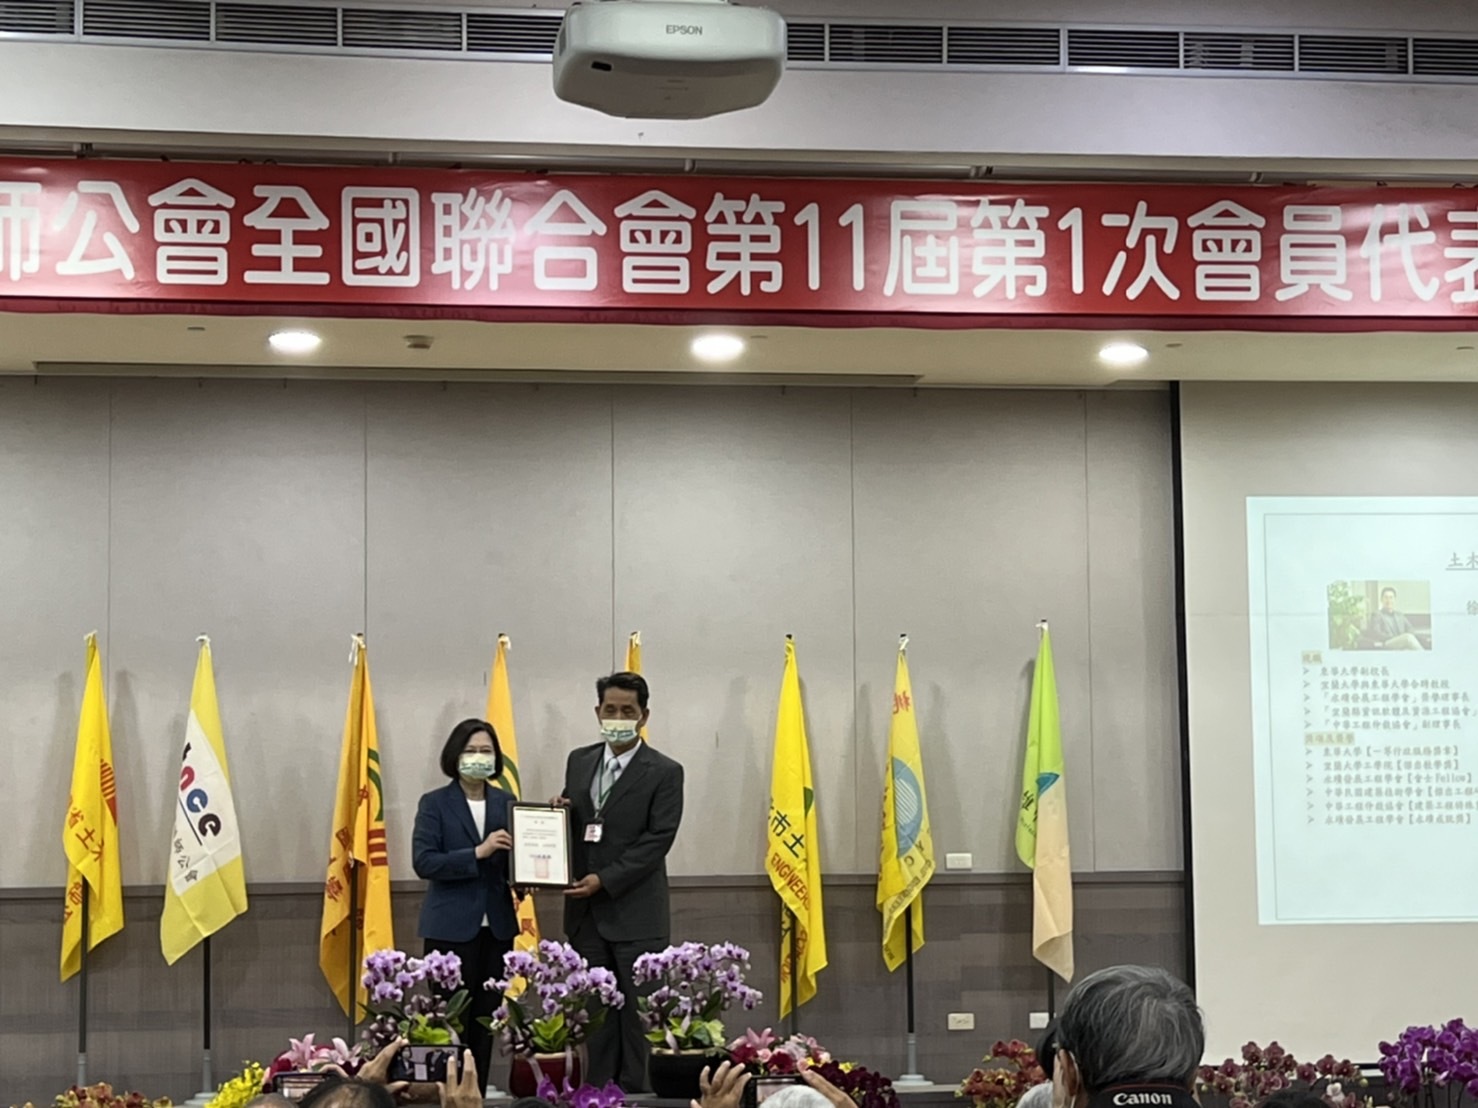 徐輝明副校長榮獲中華民國土木技師公會全國聯合會土木工程教育傑出貢獻獎